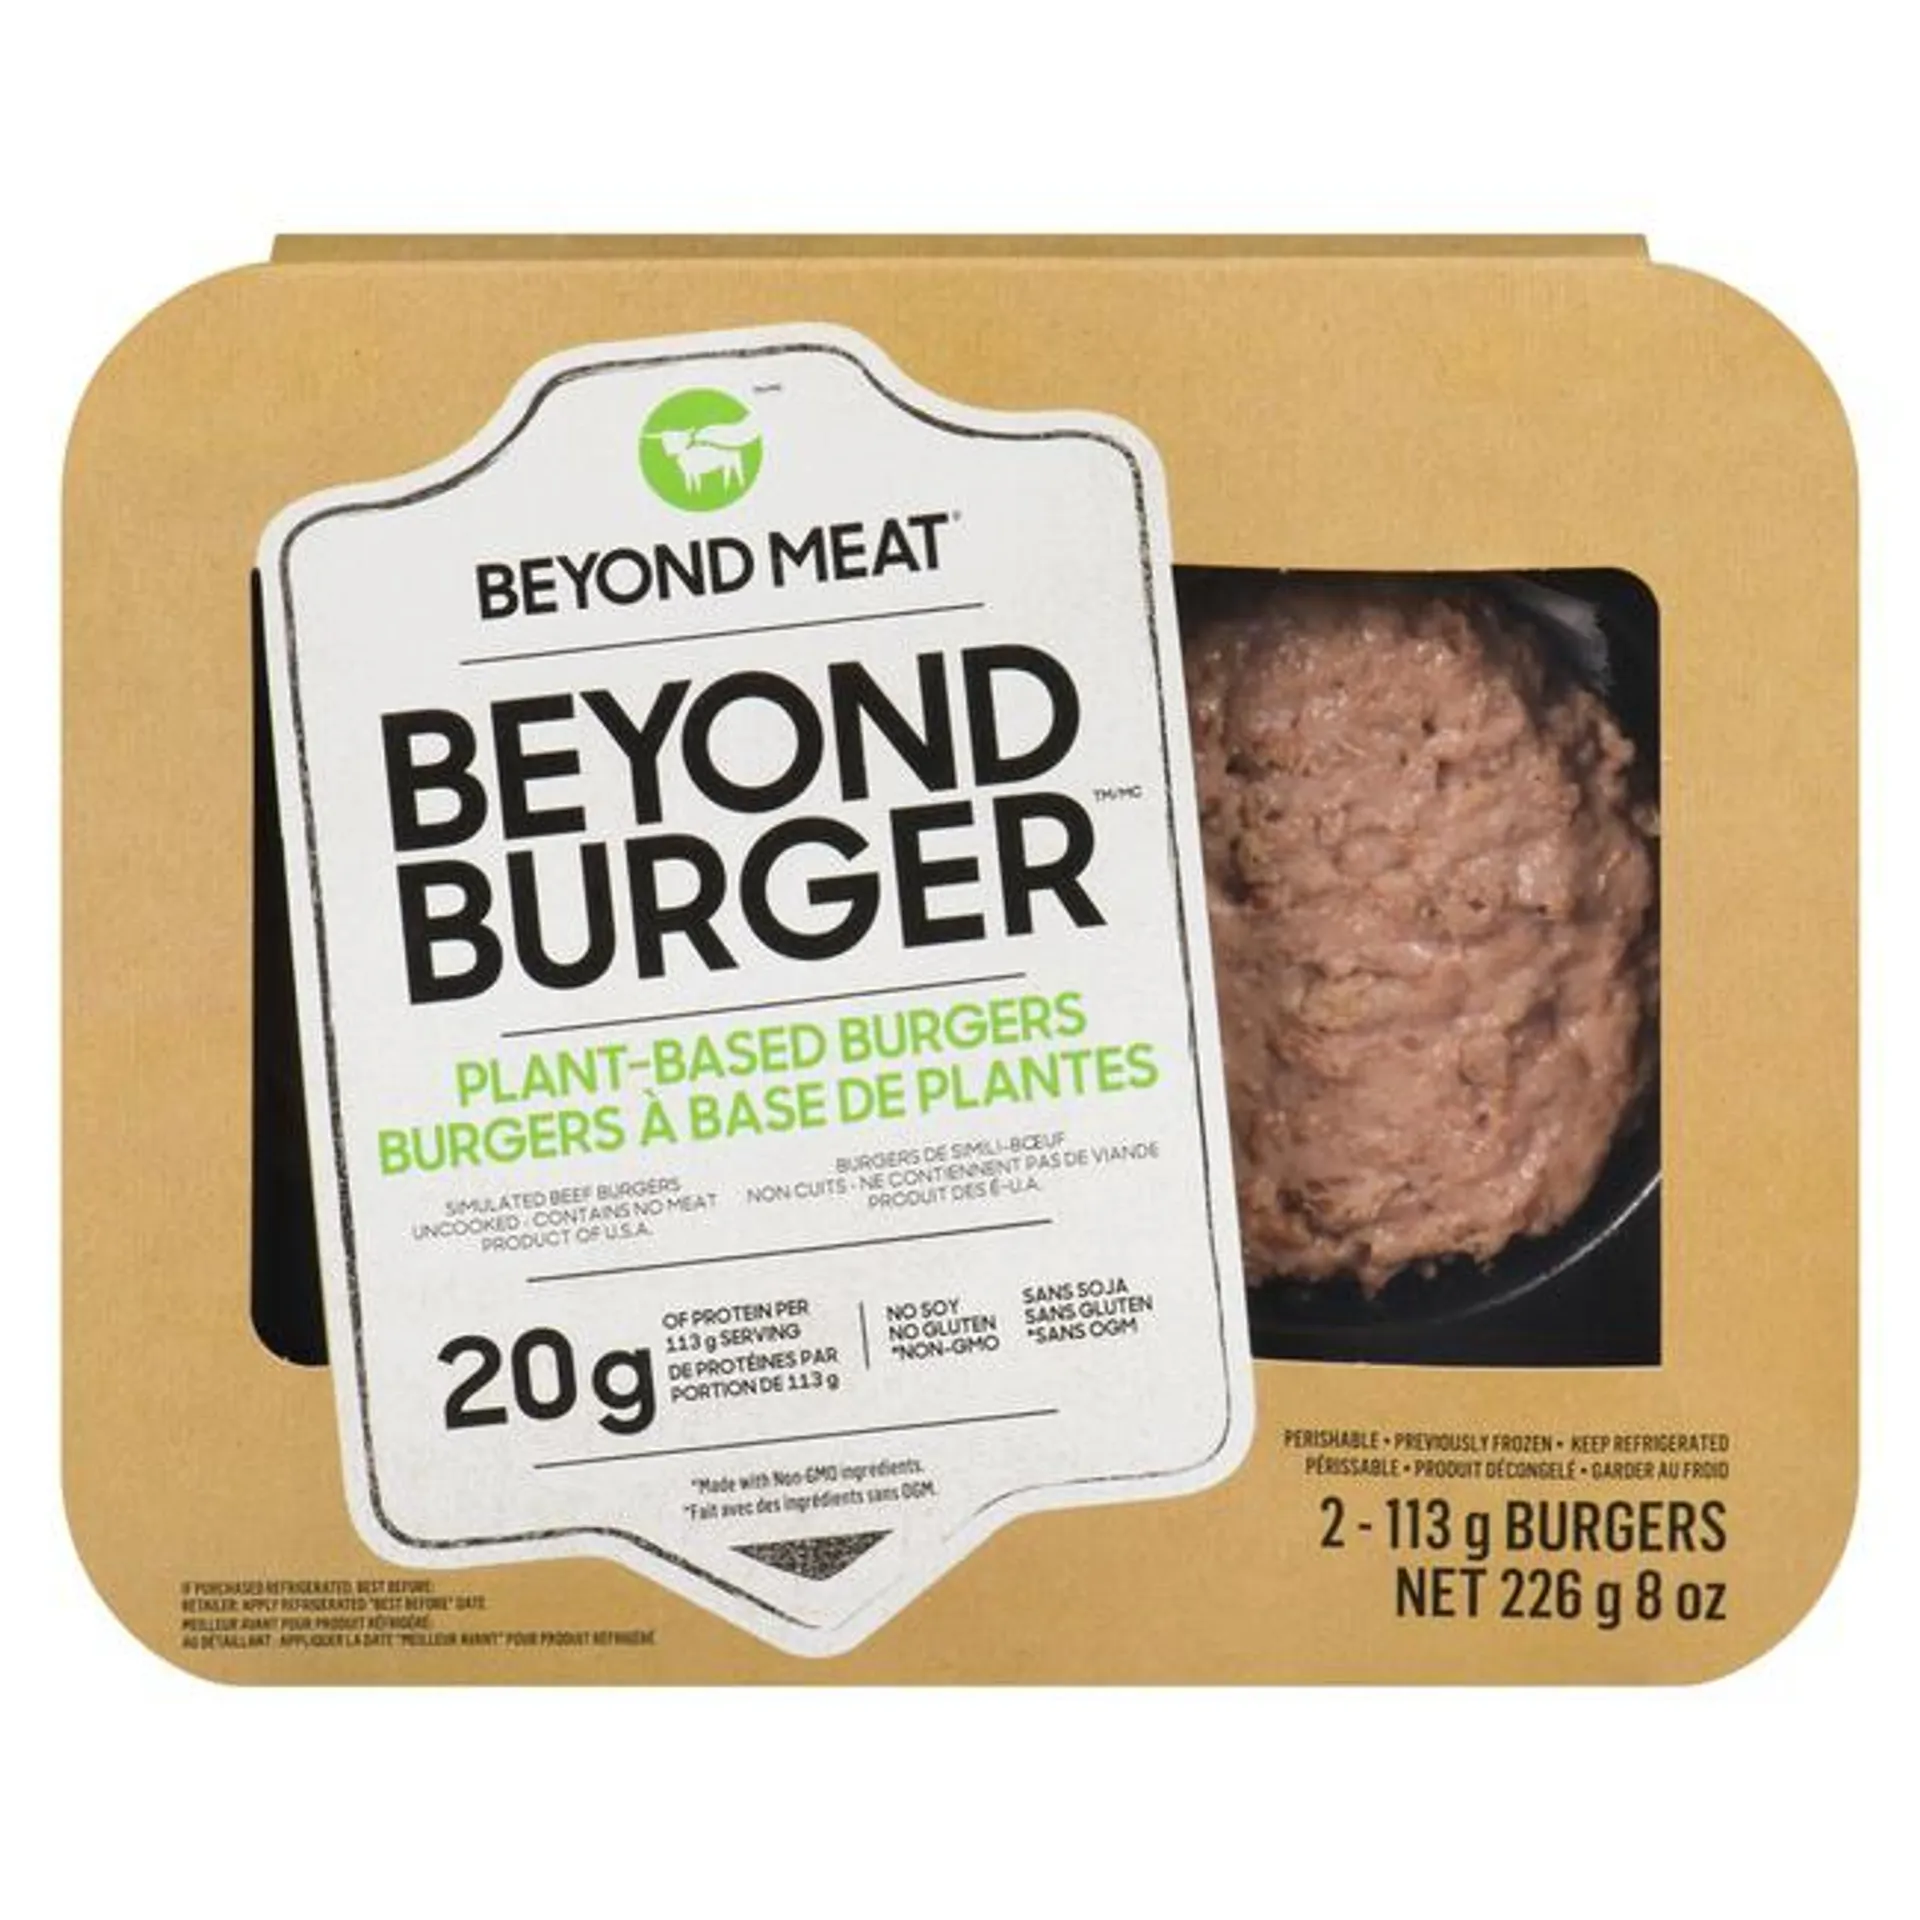 Beyond Burger - Plant-Based Burgers